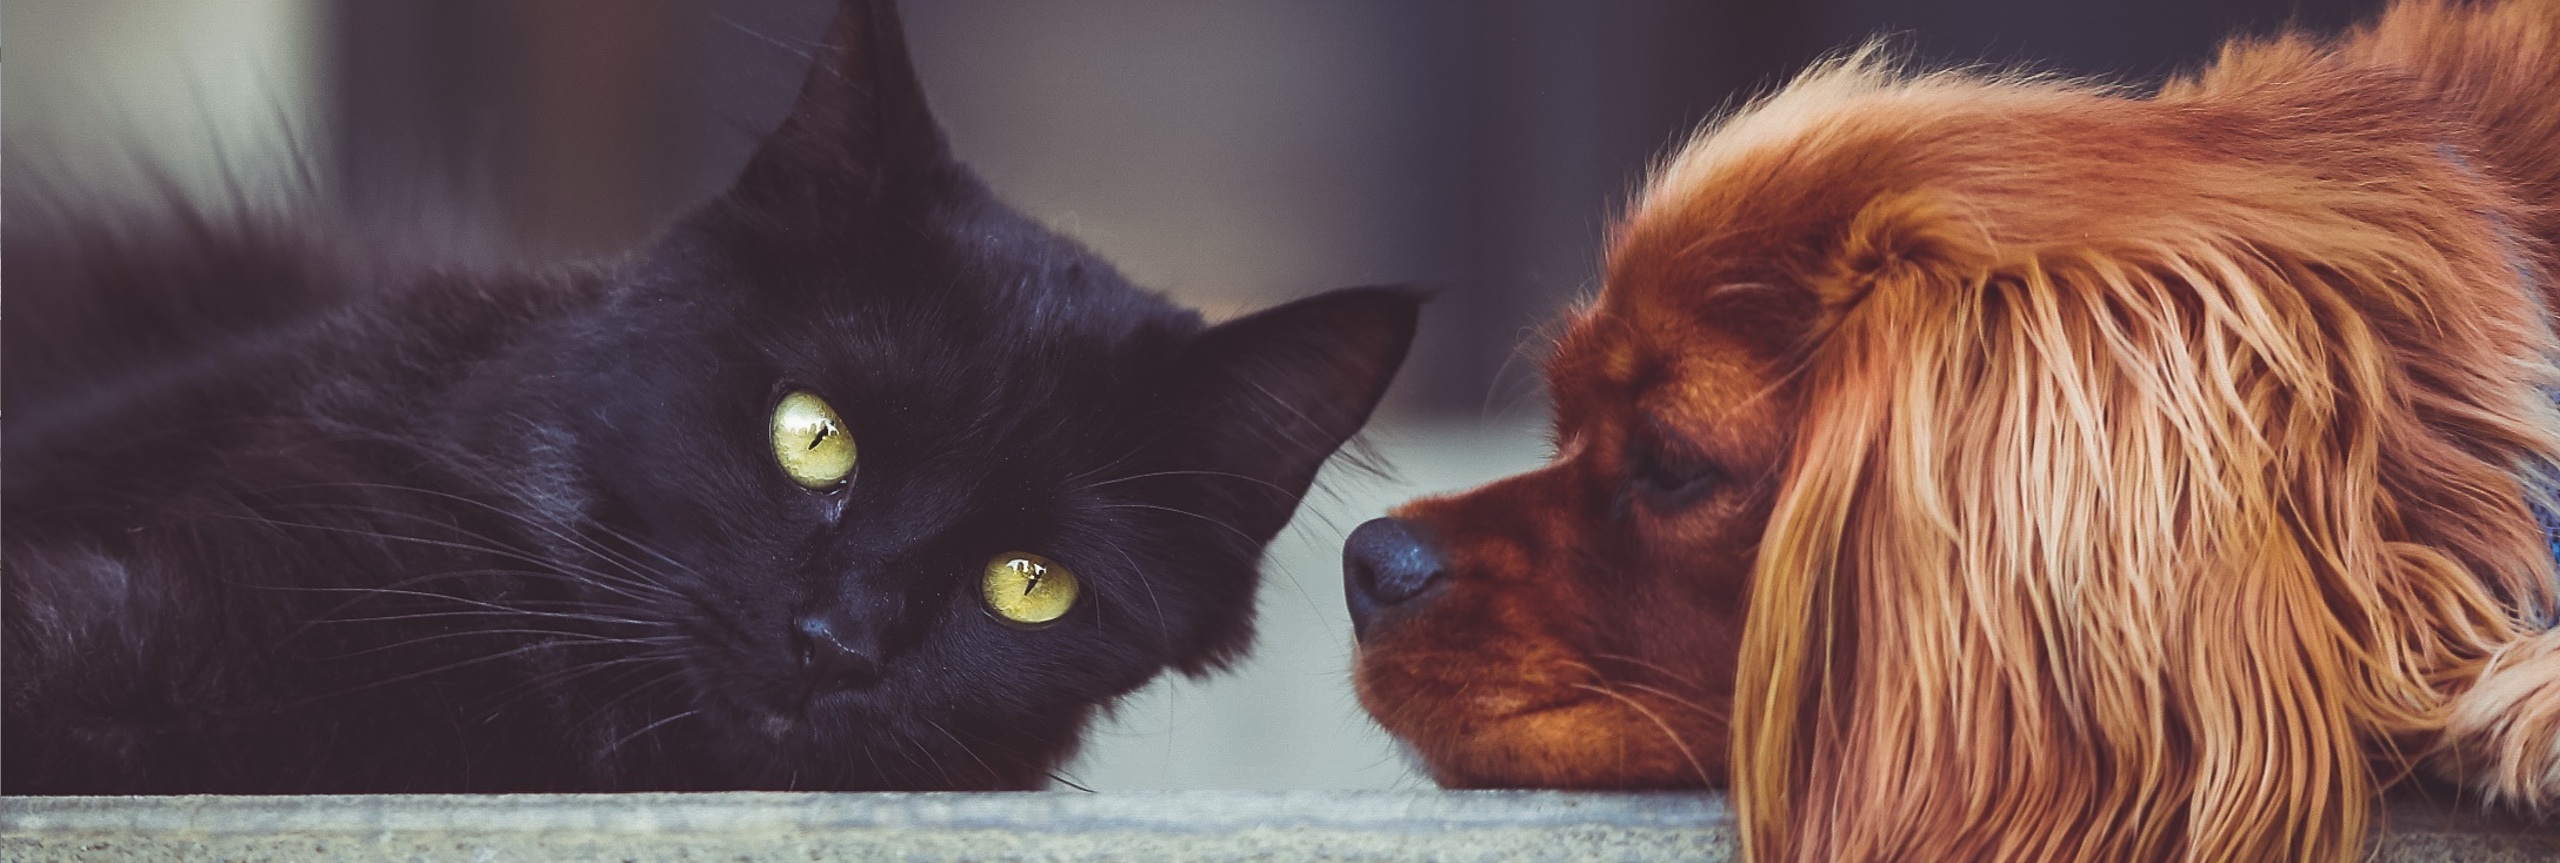 zwarte kat en bruine hond die op een grijs tapijt liggen